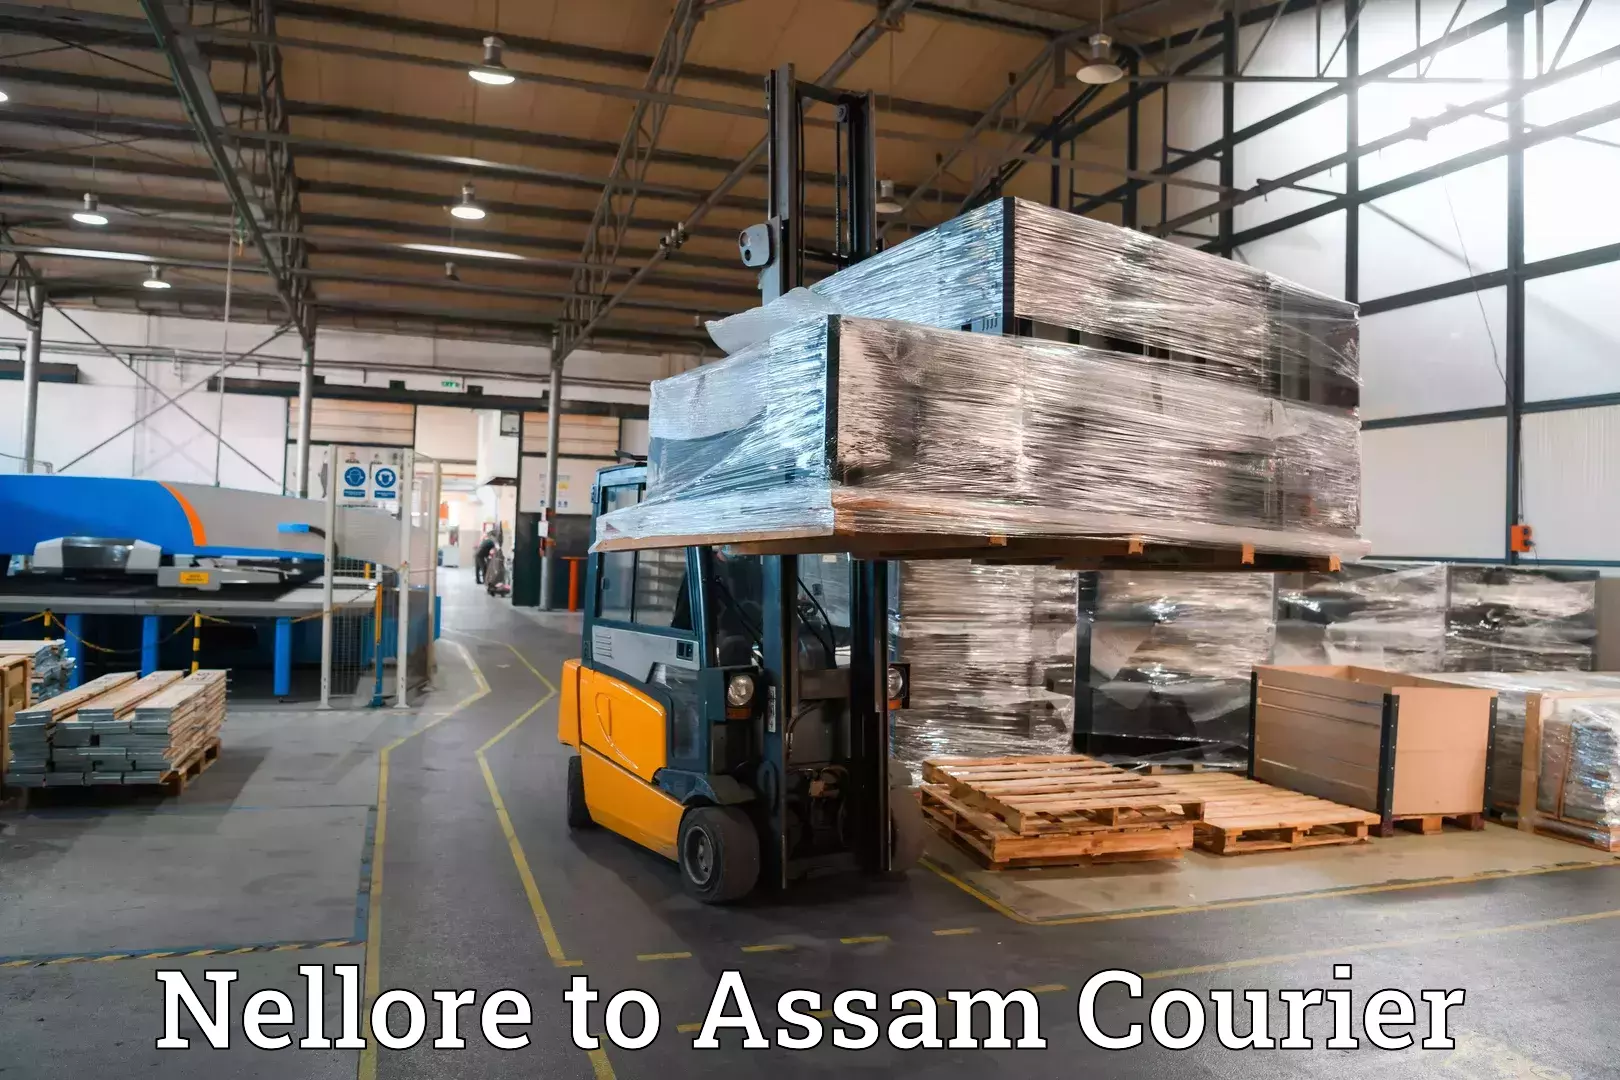 Luggage transfer service Nellore to Assam